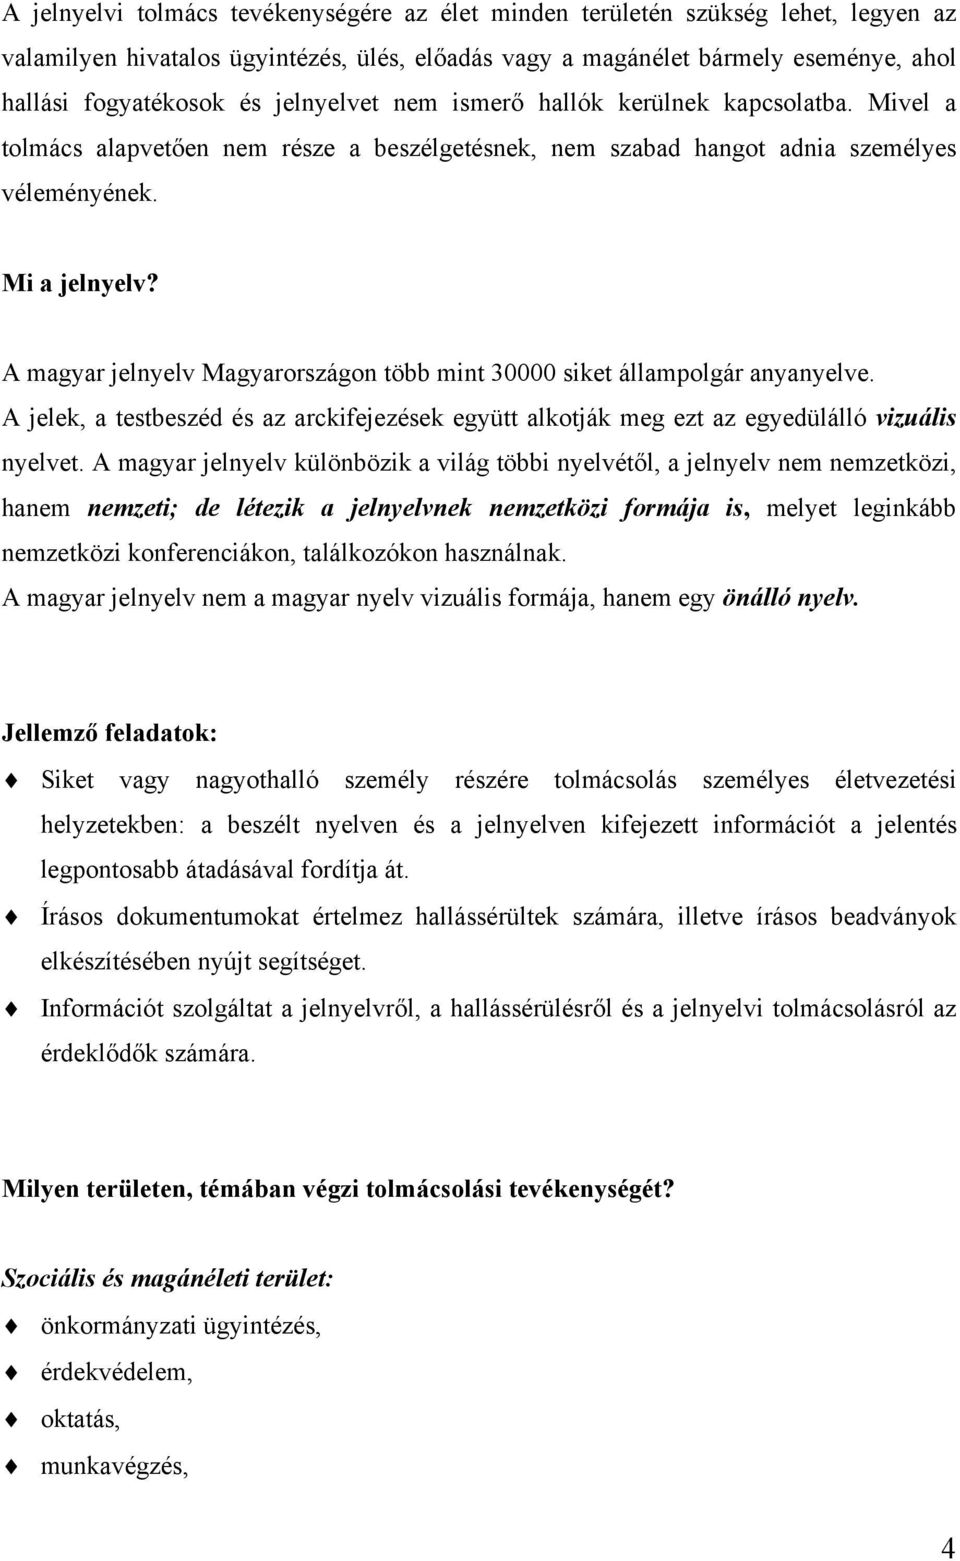 A magyar jelnyelv Magyarországon több mint 30000 siket állampolgár anyanyelve. A jelek, a testbeszéd és az arckifejezések együtt alkotják meg ezt az egyedülálló vizuális nyelvet.